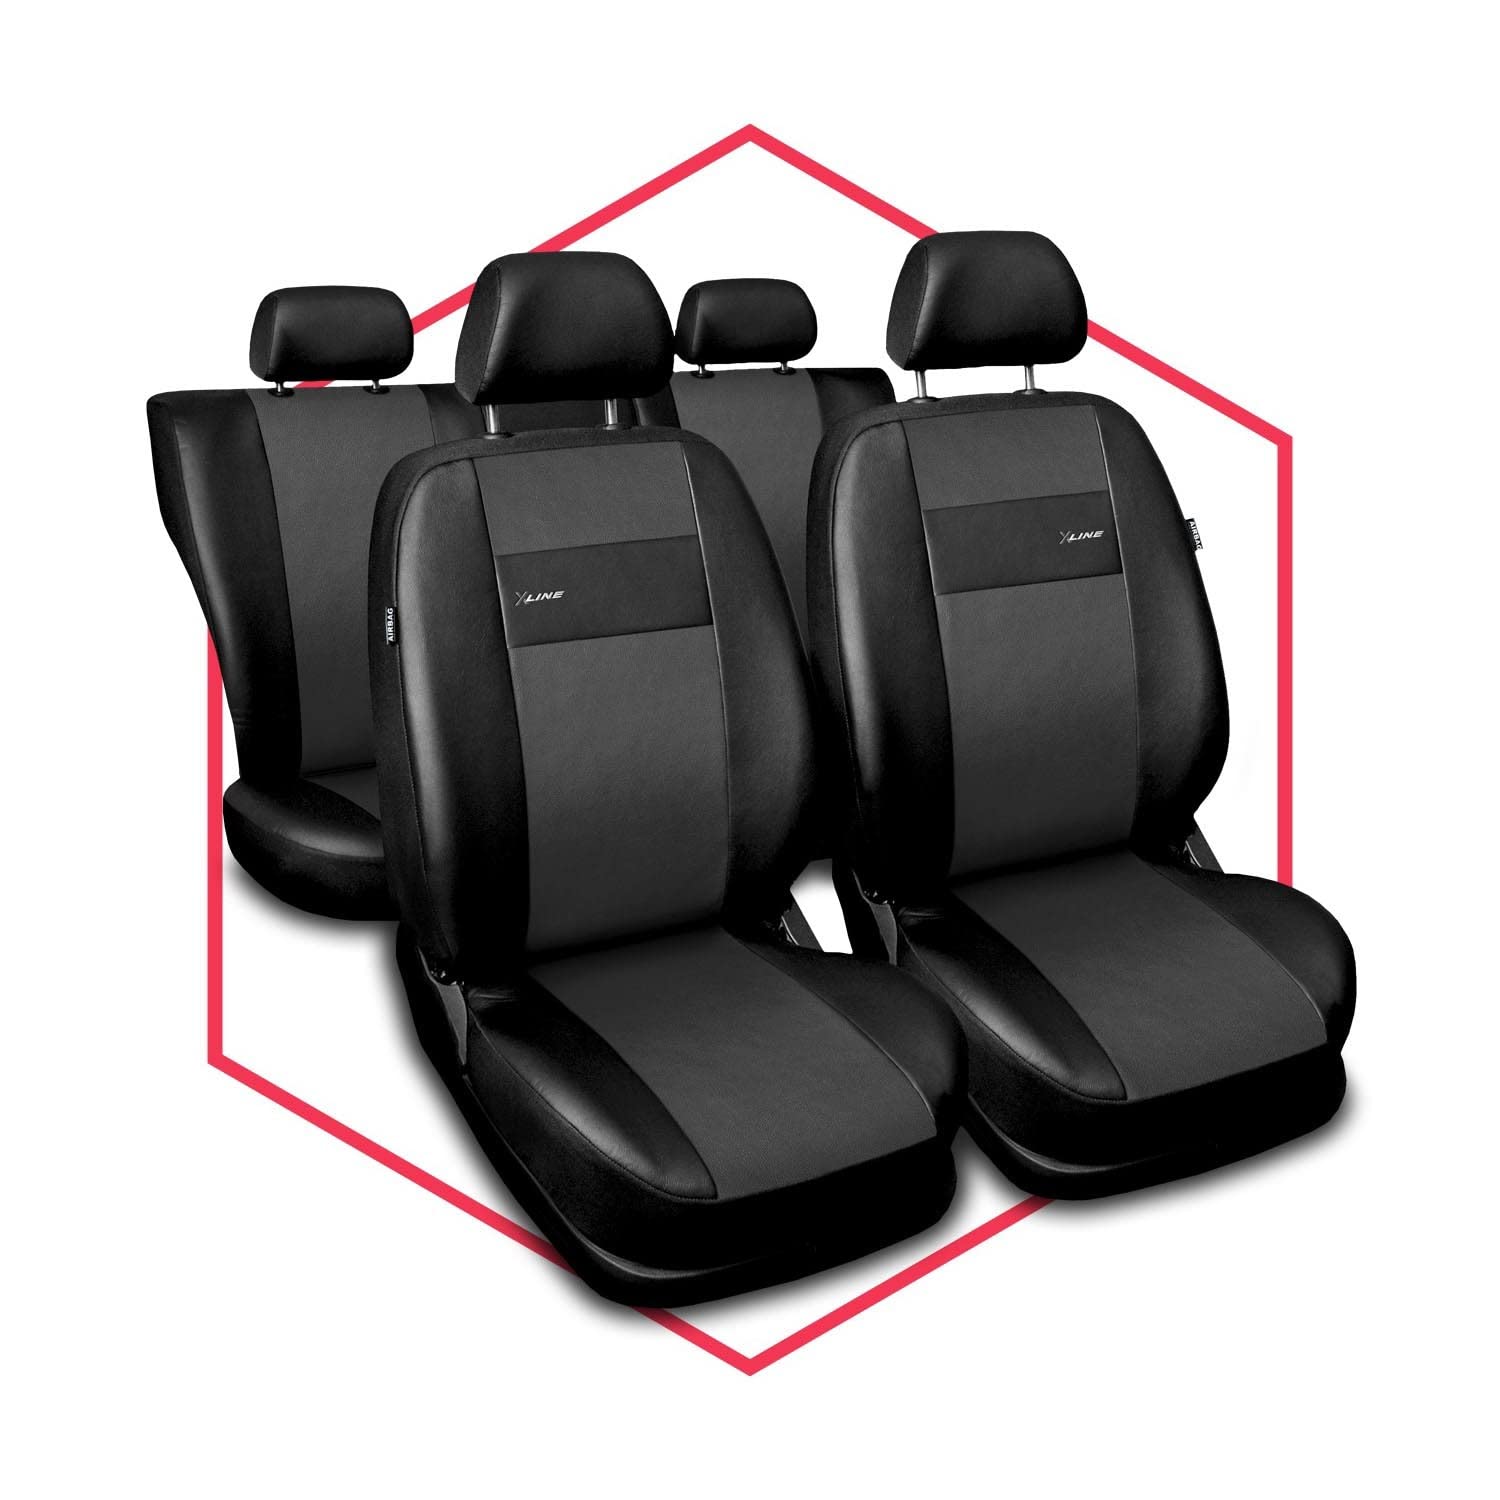 3er Set Saferide Autositzbezüge PKW universal | Auto Sitzbezüge Kunstleder Grau für Airbag geeignet | für Vordersitze und Rückbank | 1+1 Autositze vorne und 1 Sitzbank hinten teilbar 2 Reißverschlüsse von Saferide